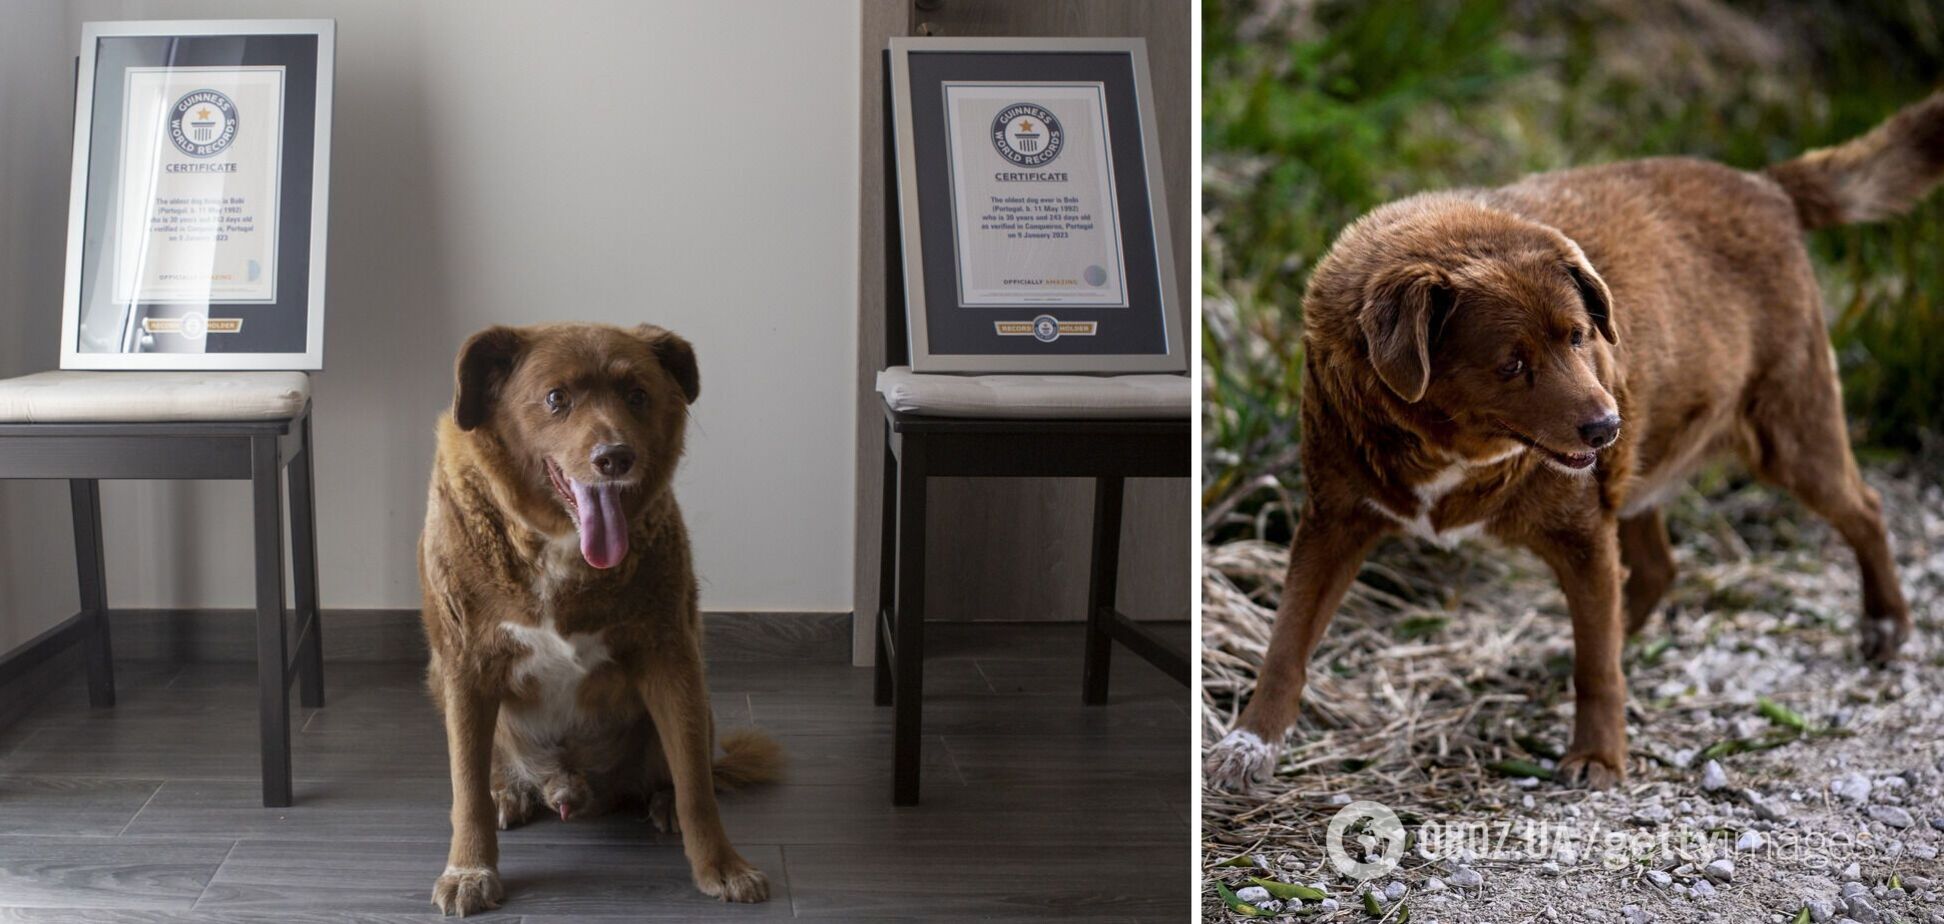 Найстарішого собаку в історії позбавили титулу Книги рекордів Гіннеса після перевірки доказів
